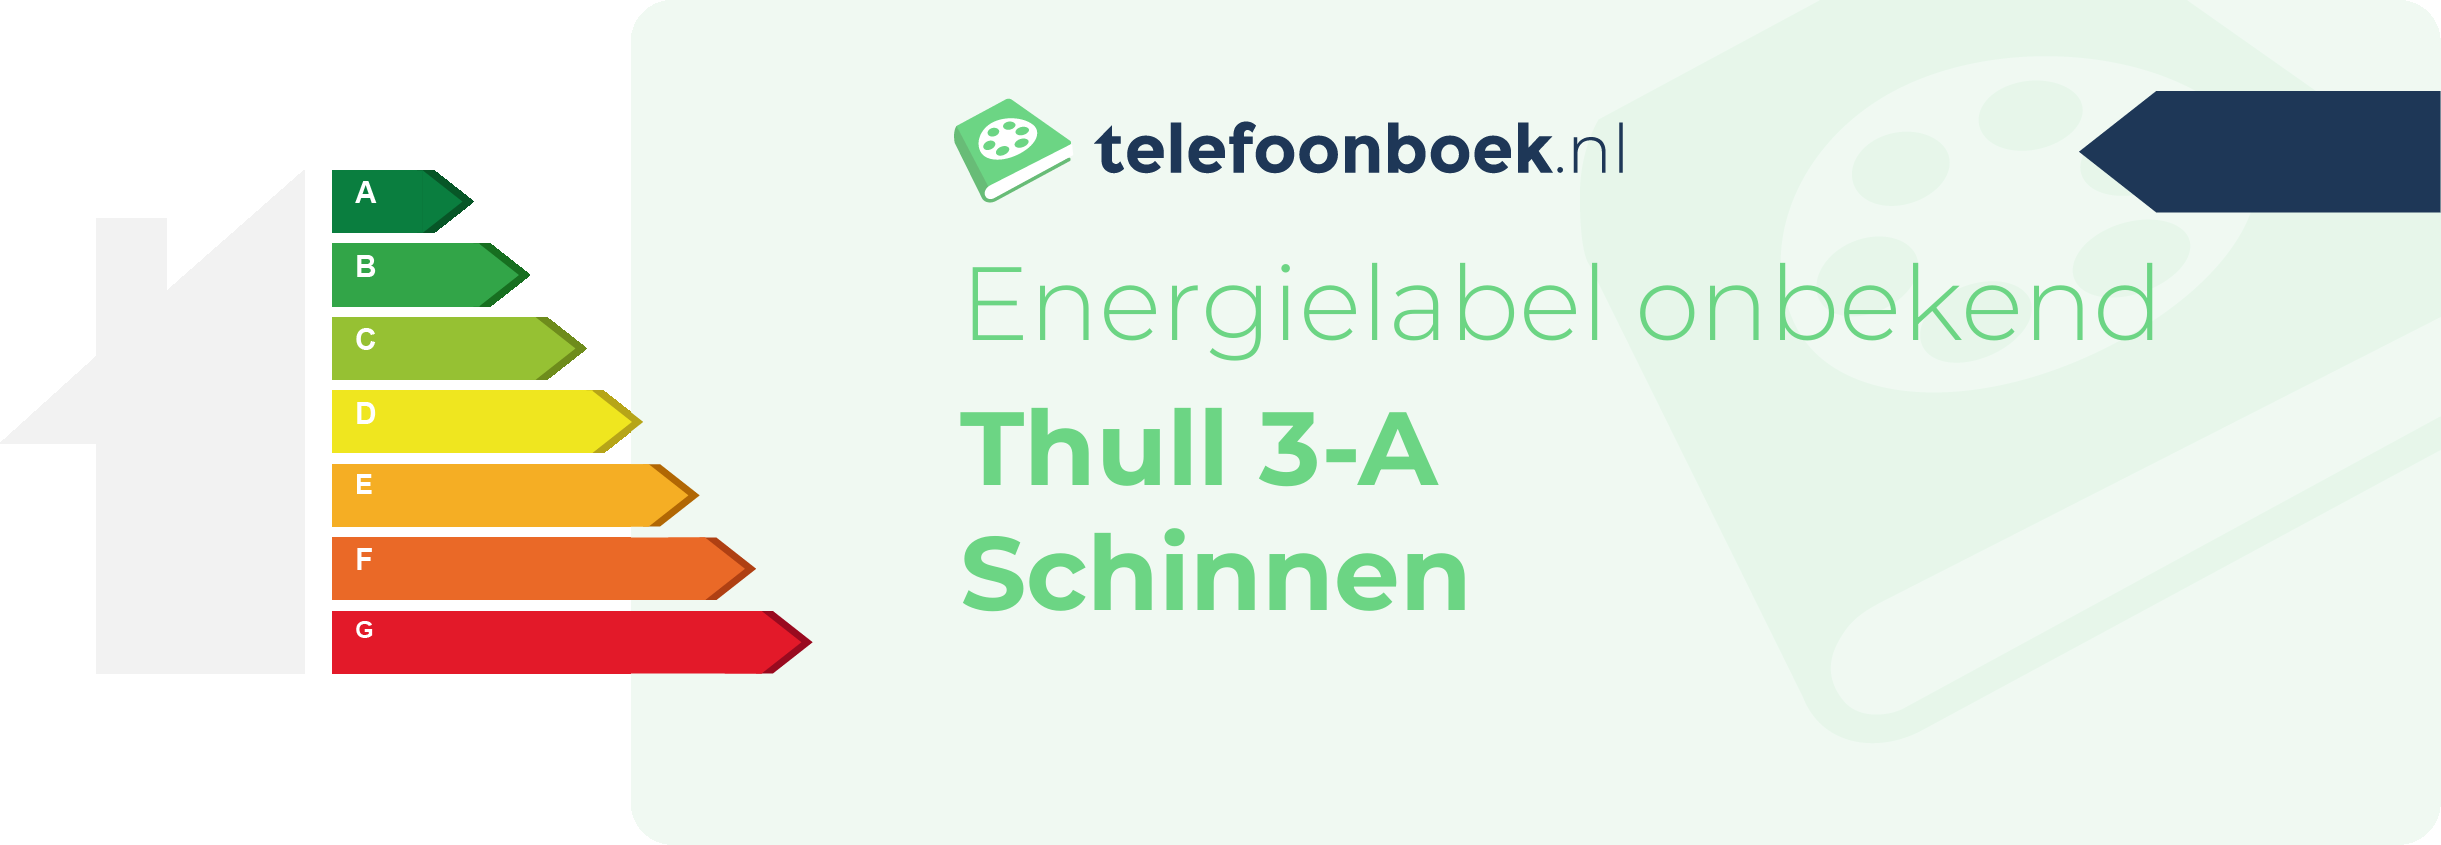 Energielabel Thull 3-A Schinnen